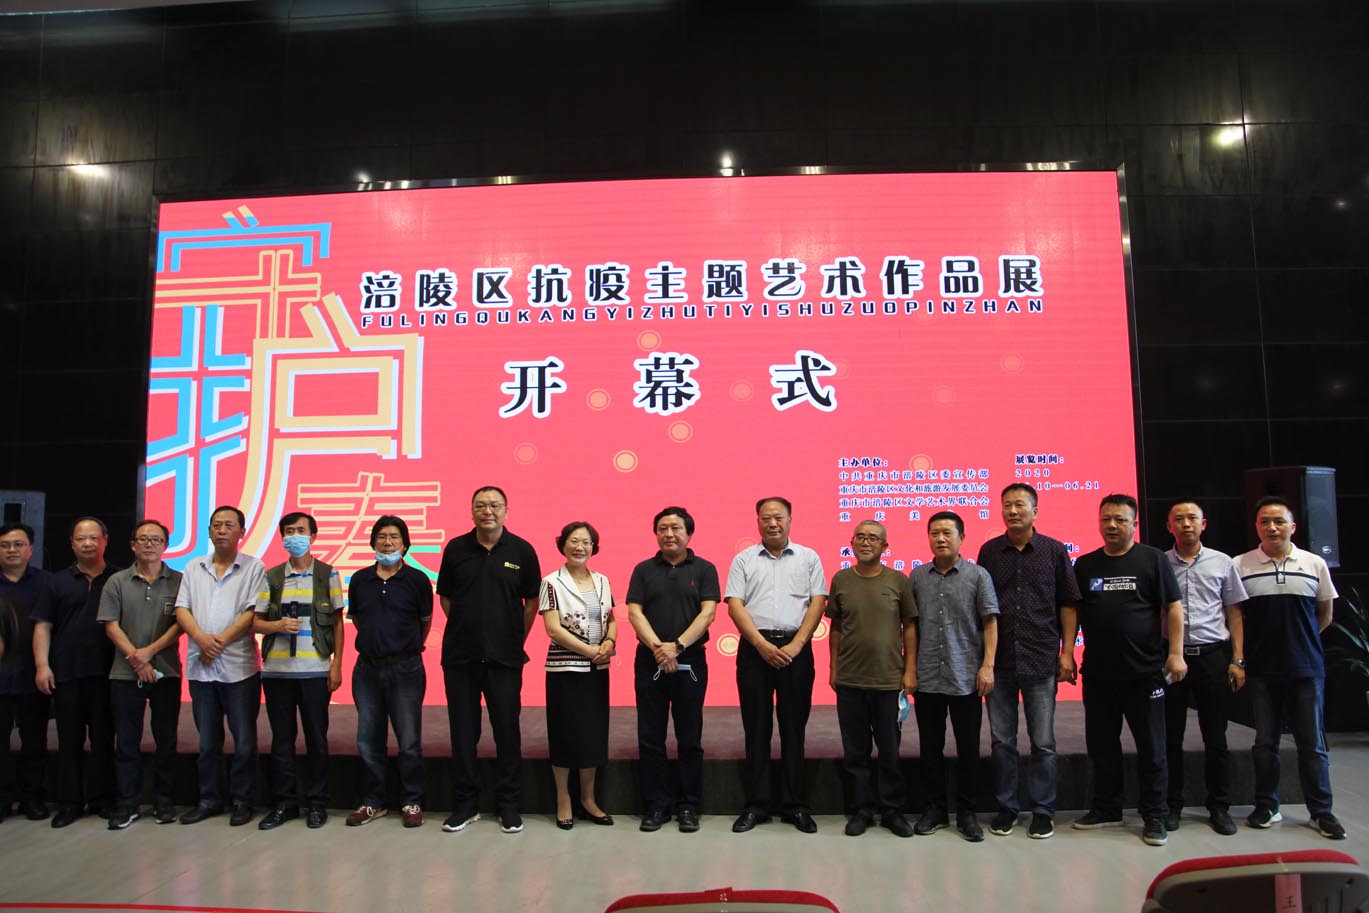 《守护春天——涪陵区抗疫主题艺术作品展》 在重庆美术馆成功开幕